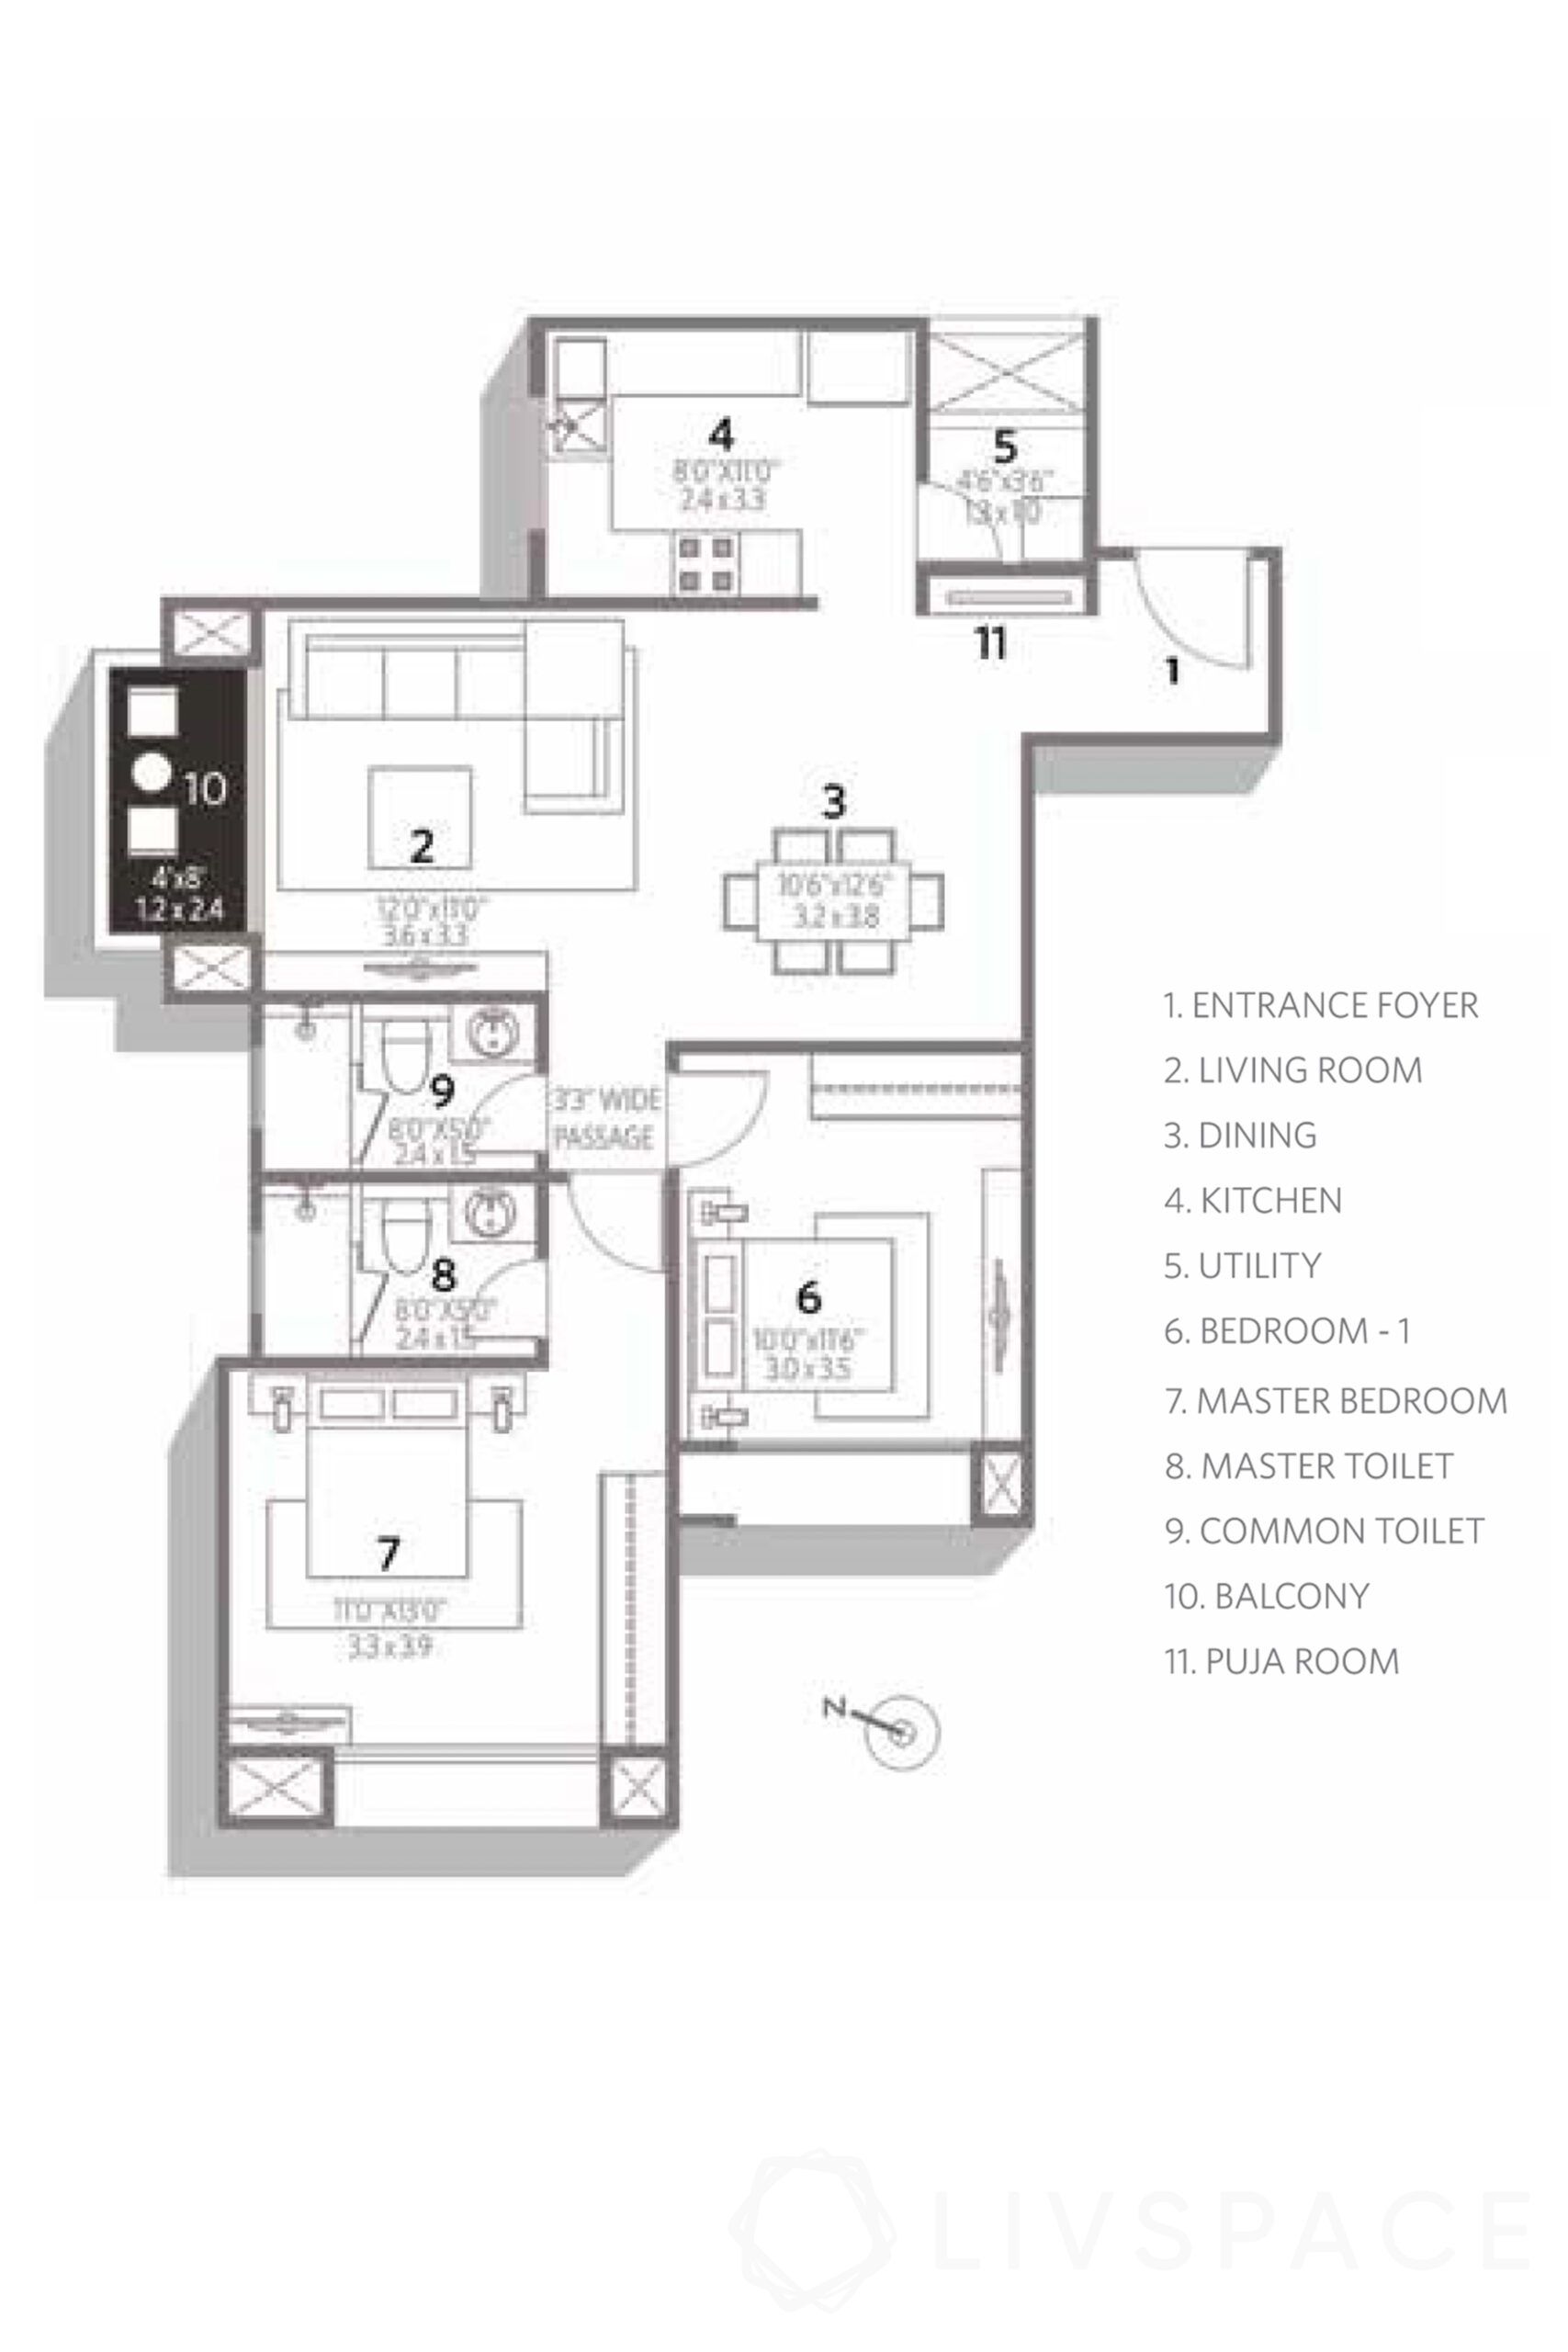 interiors-in-chennai-floor-plan